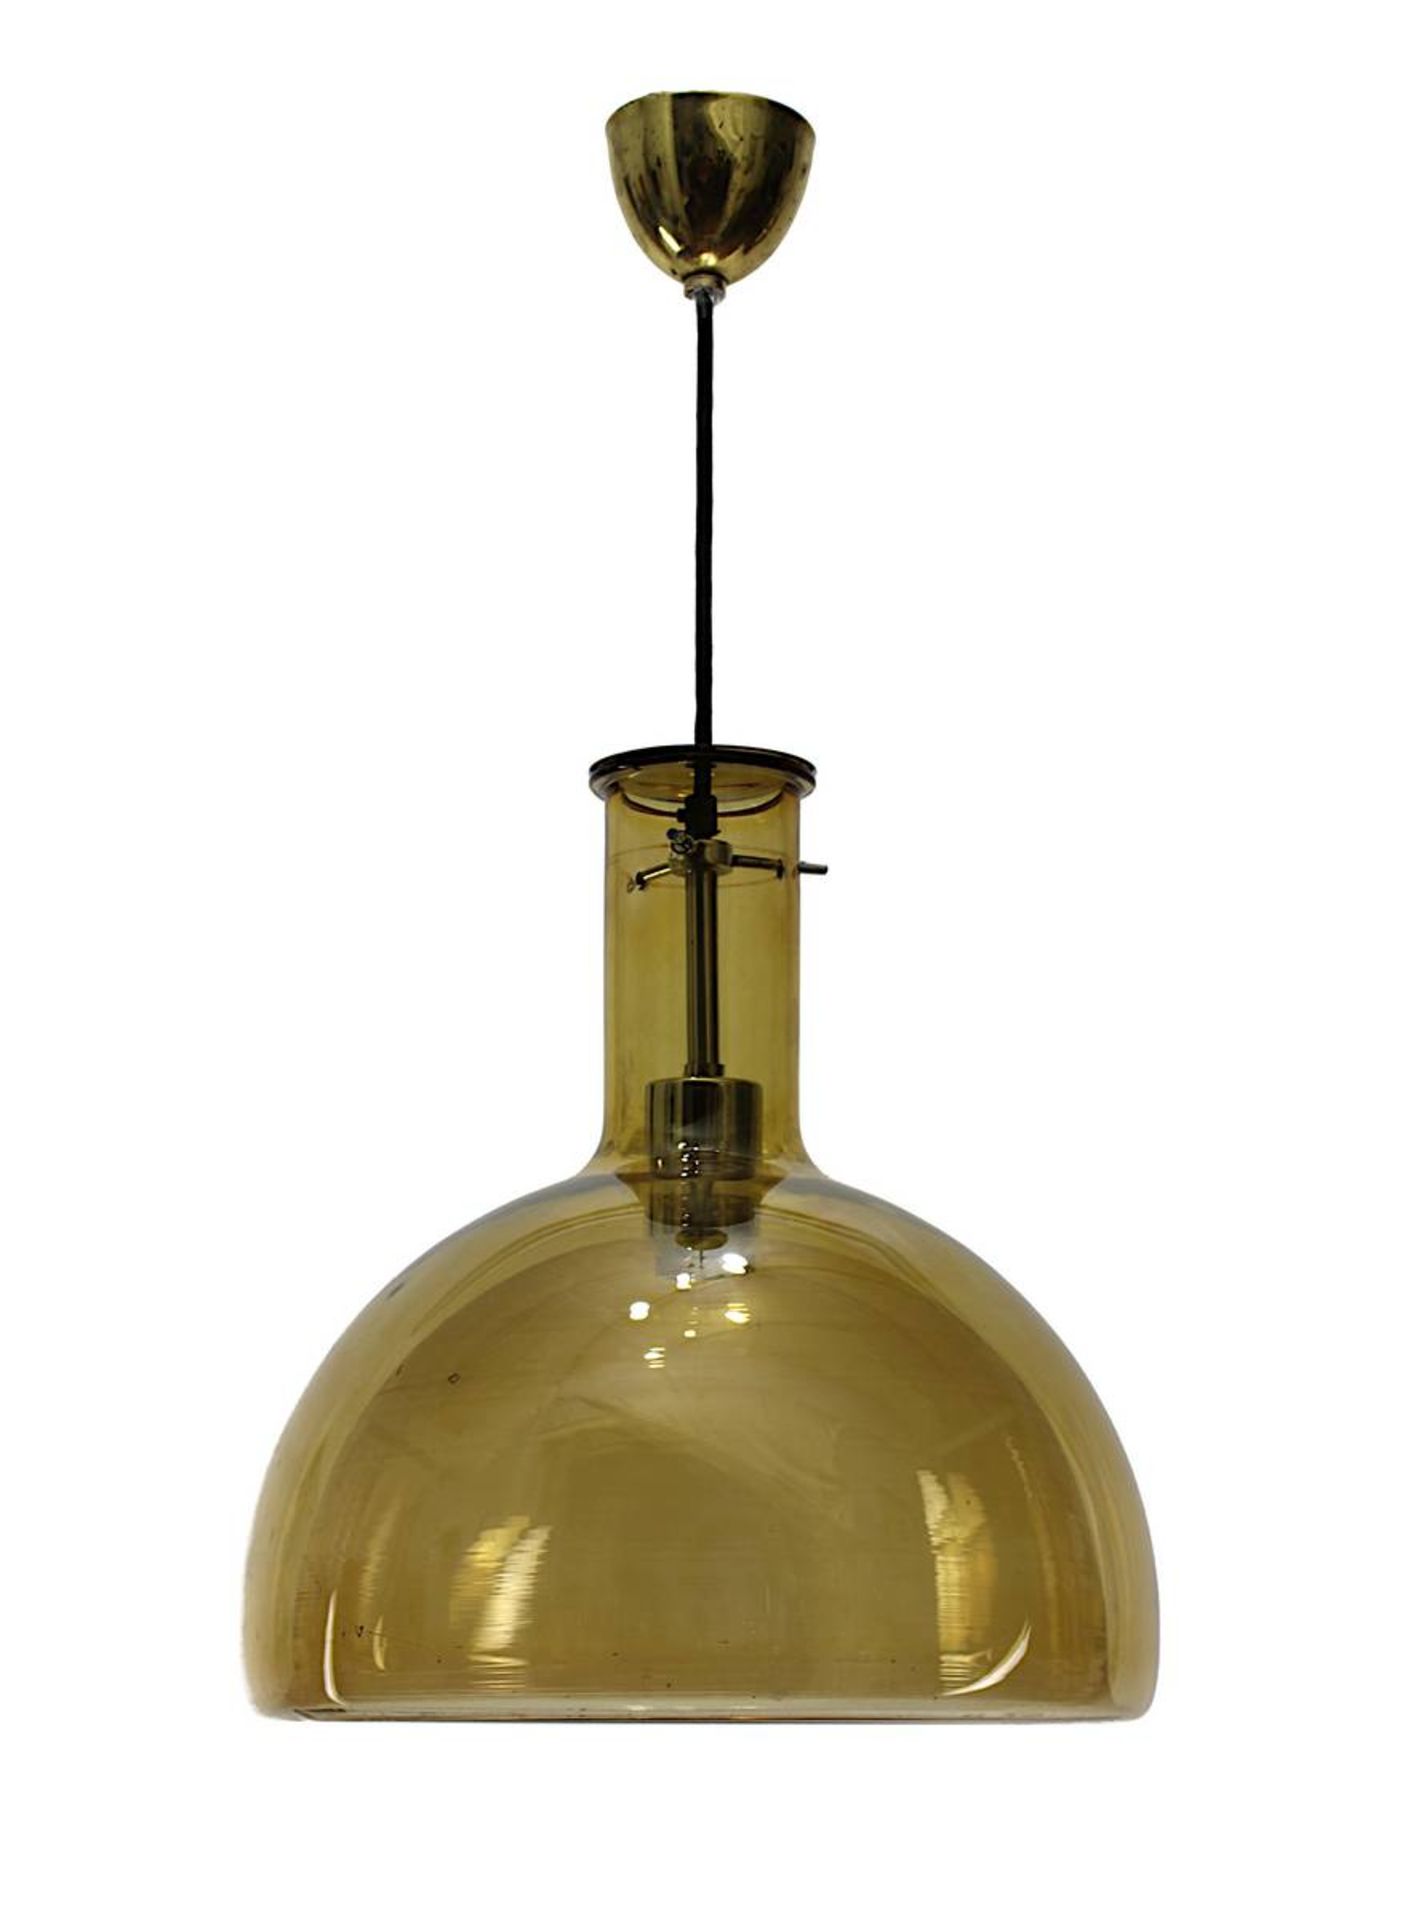 Pendelleuchte aus cognacfarbenem Glas, um 1970, großer in Form geblasener Glaslampenschirm mit